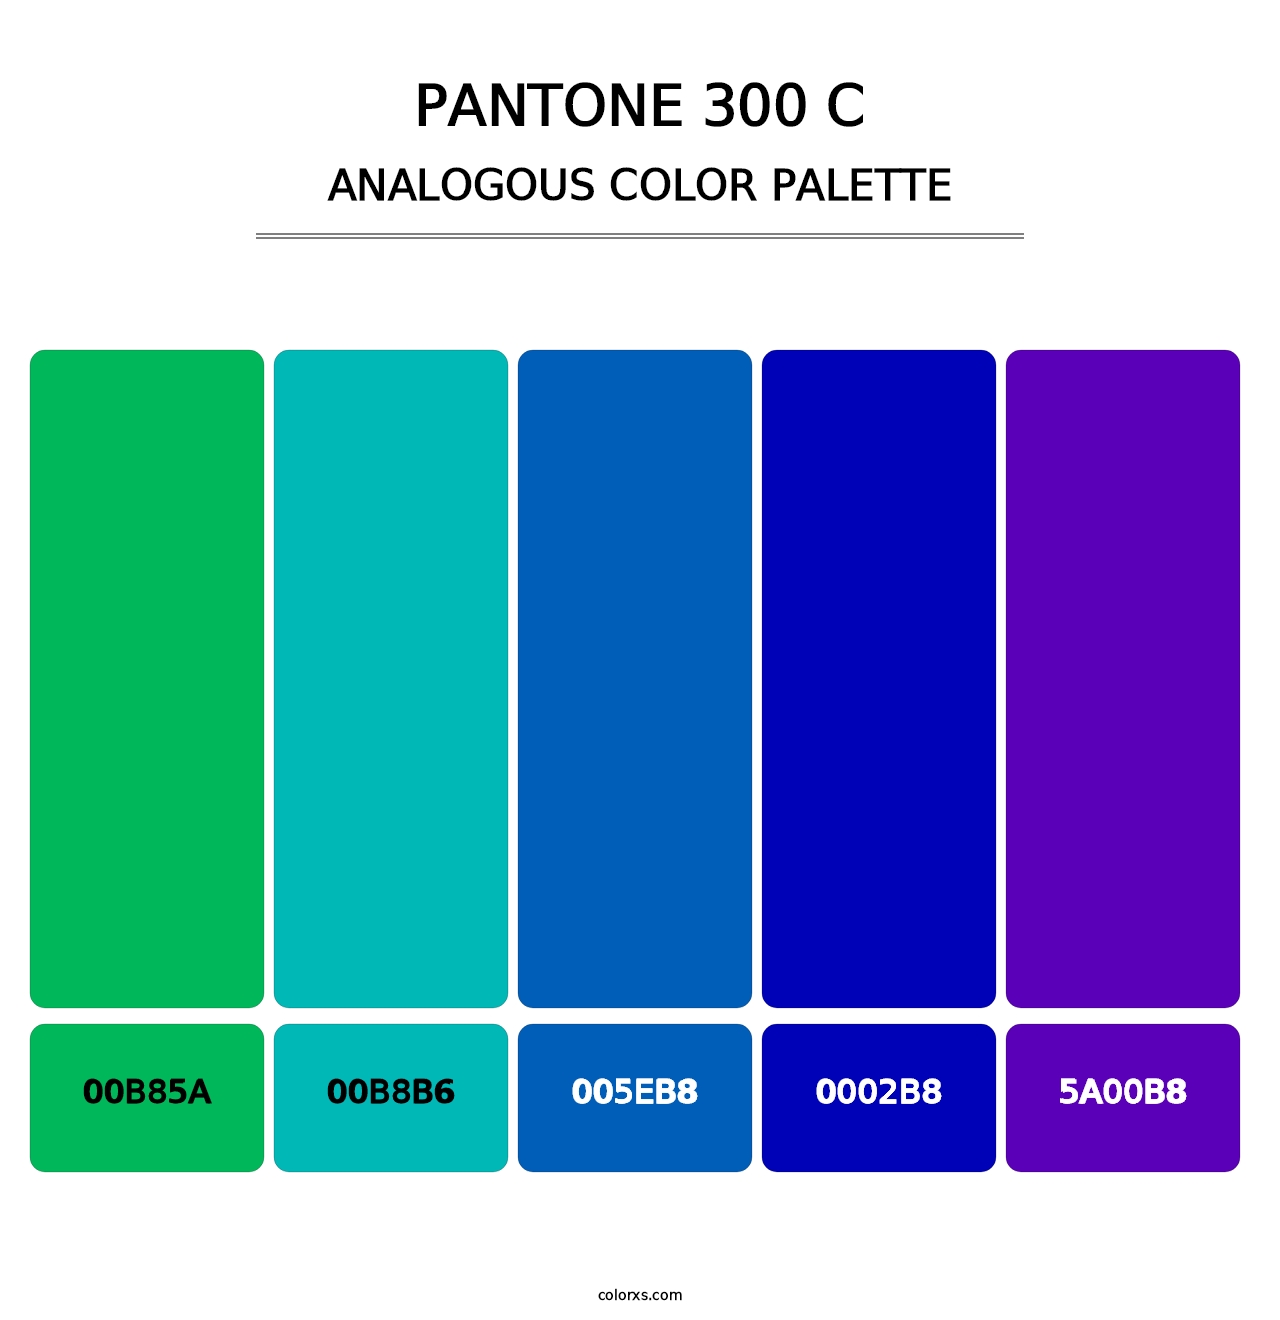 PANTONE 300 C - Analogous Color Palette